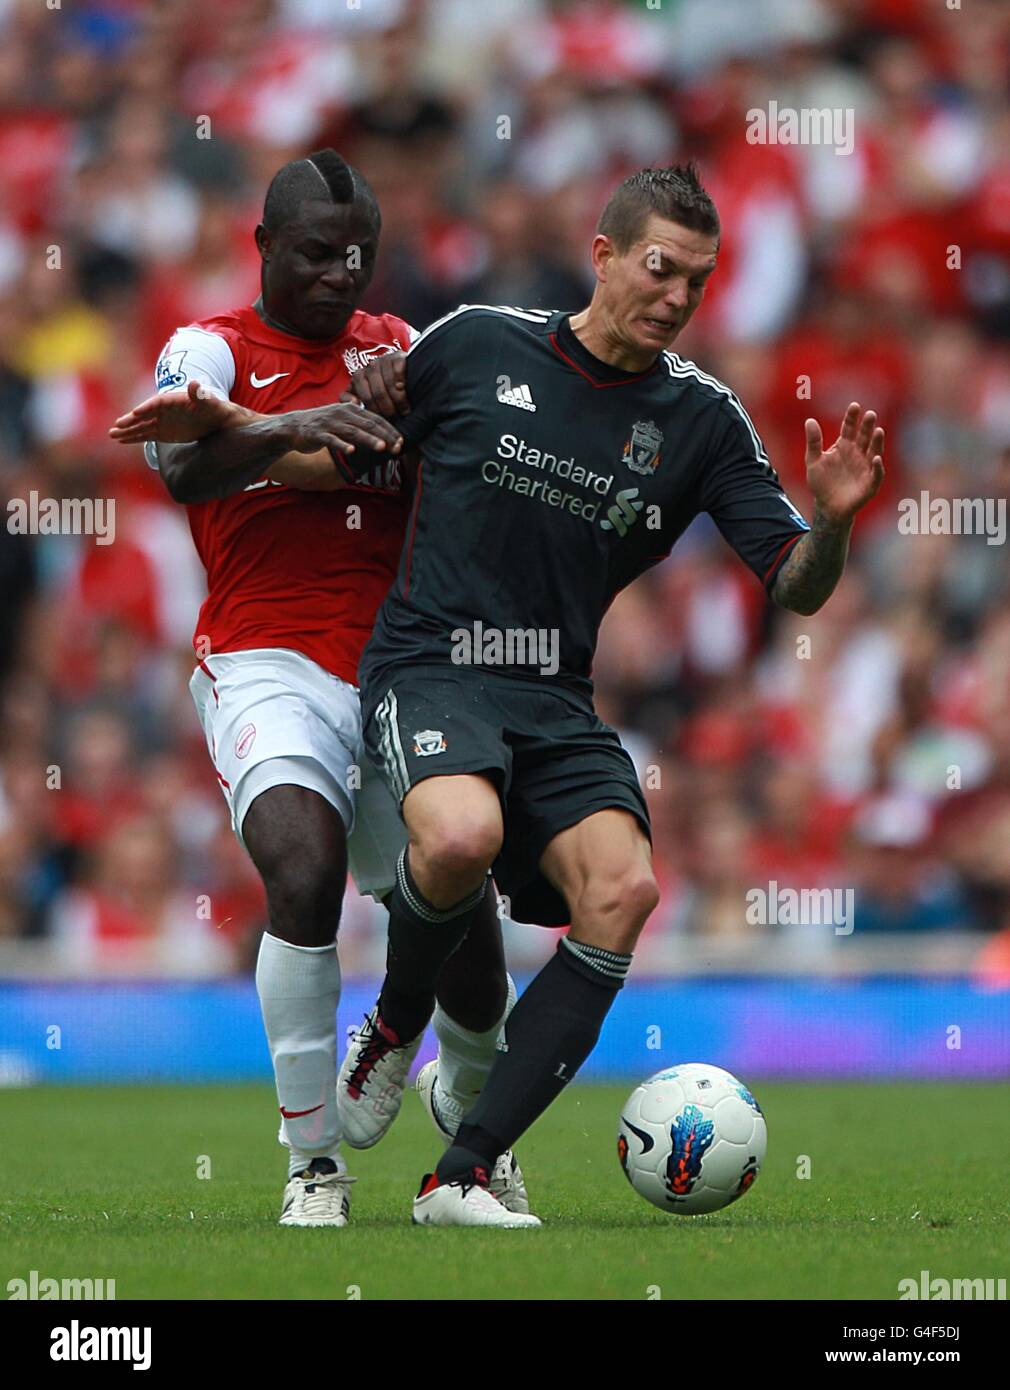 Fußball - Barclays Premier League - Arsenal gegen Liverpool - Emirates Stadium. Emmanuel Frimpong von Arsenal (links) und Daniel Agger von Liverpool kämpfen um den Ball Stockfoto